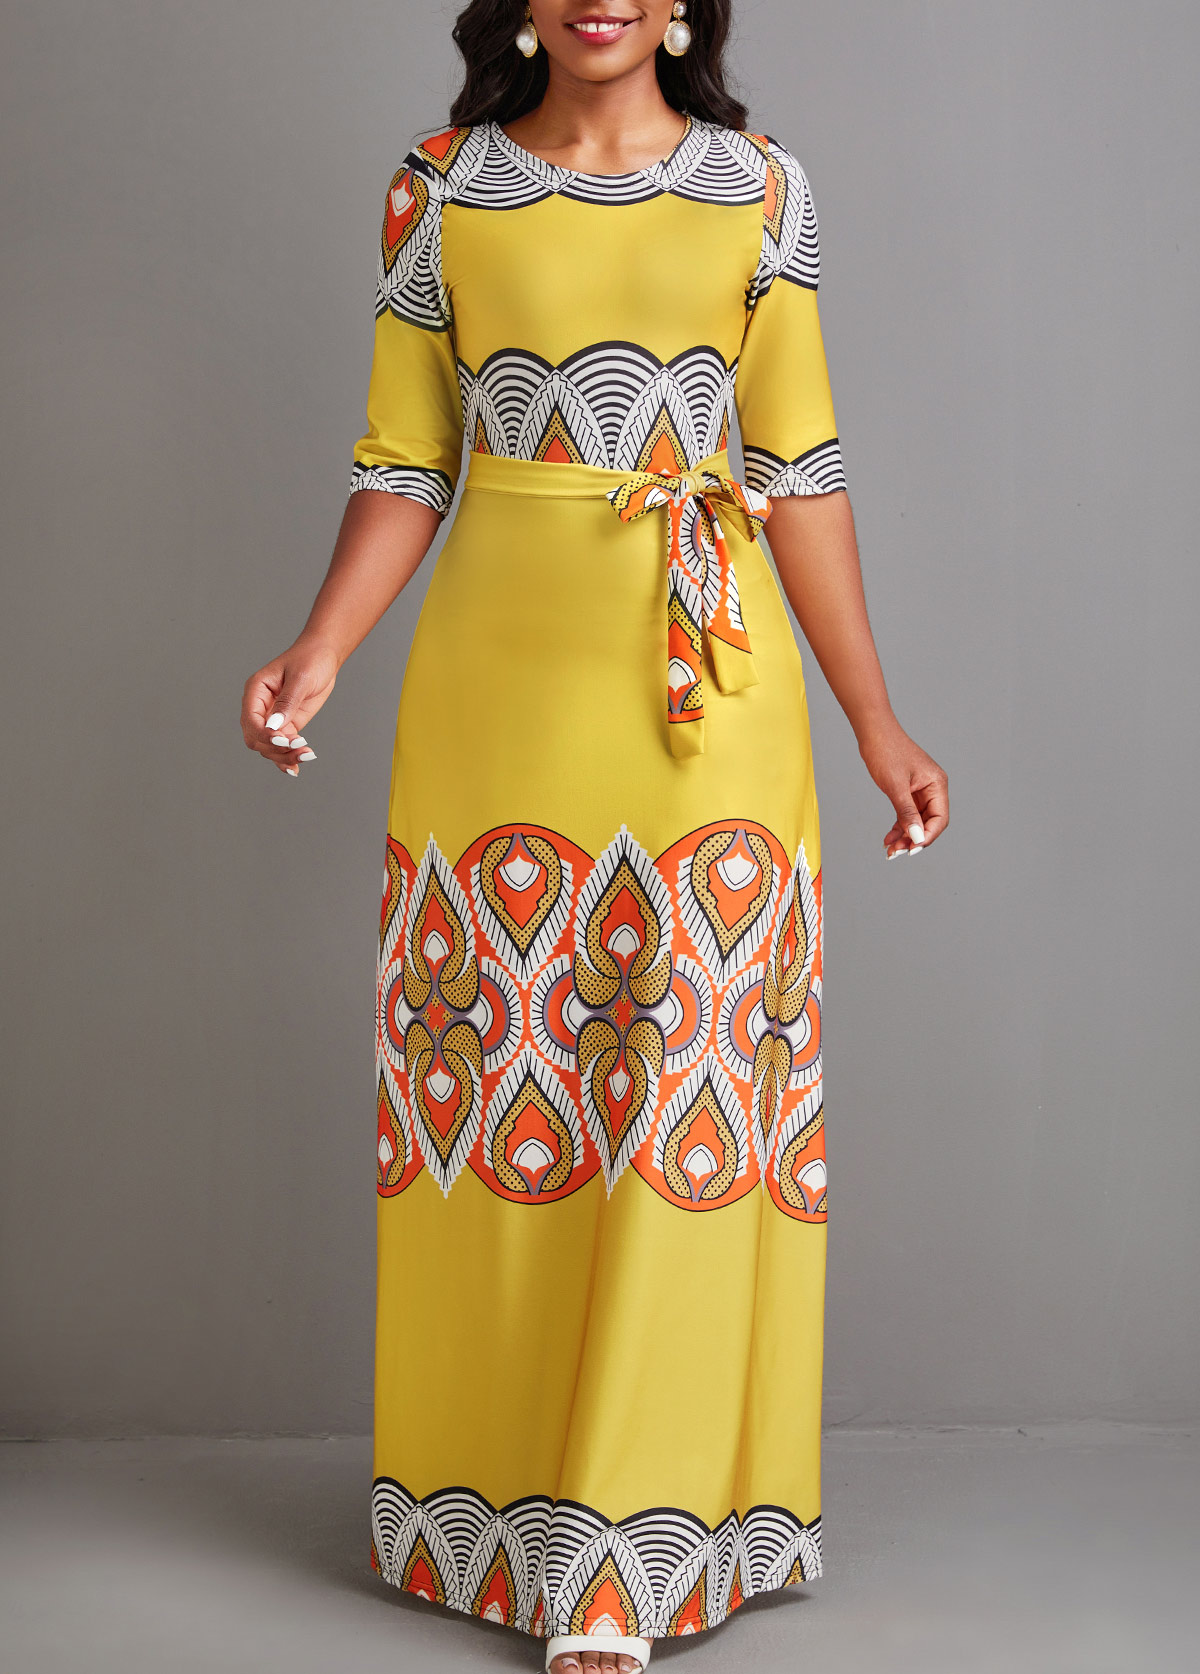 rotita cravate imprimé tribal africain jaune robe maxi ceinturée